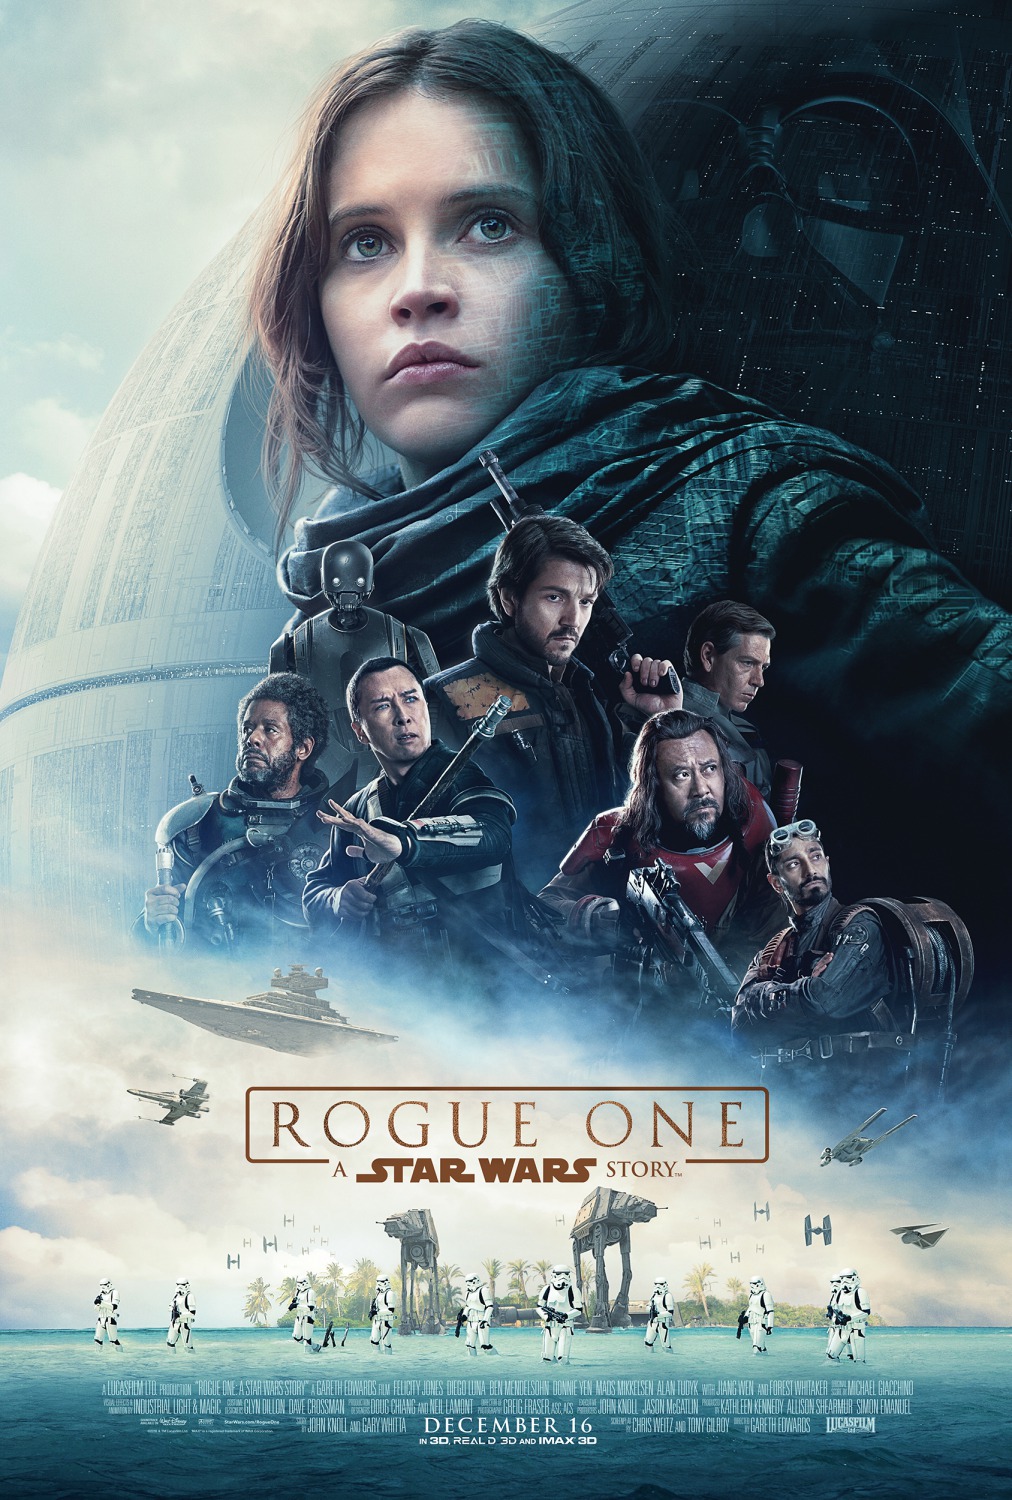 Honest film reviews: Review Rogue One (2016